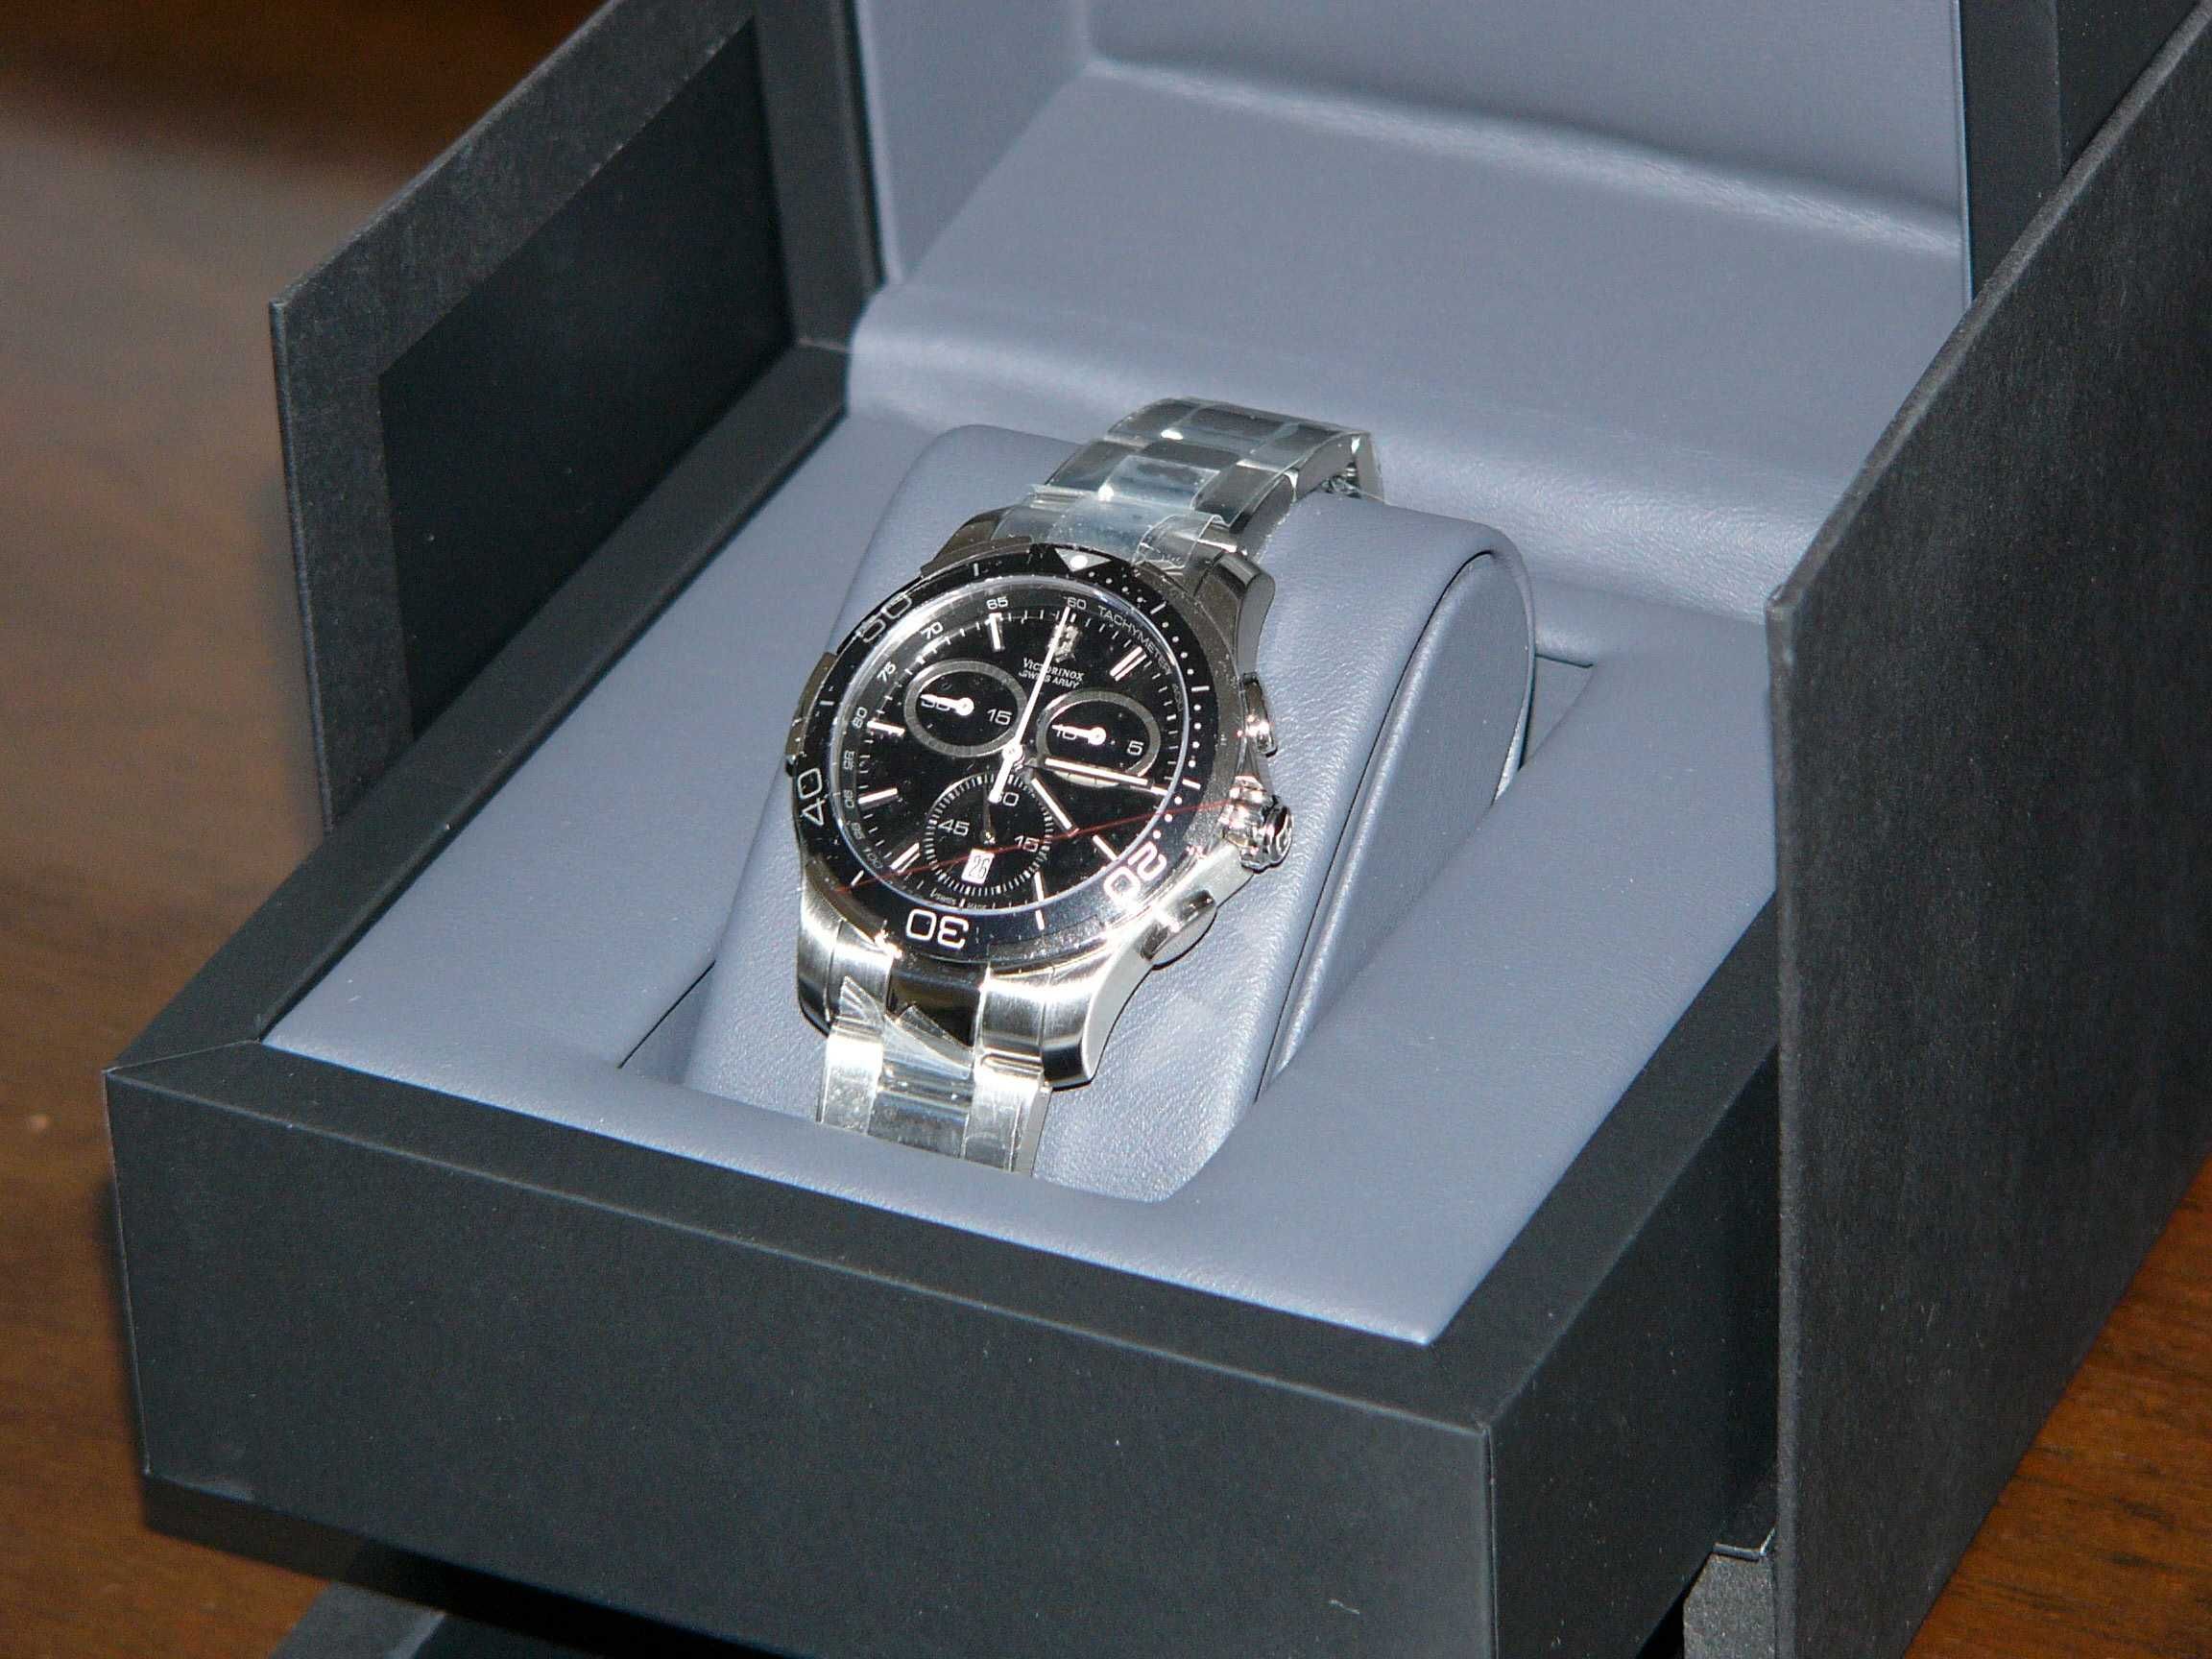 Zegarek Victorinox Swiss Army Alliance Sport chronograf nowy